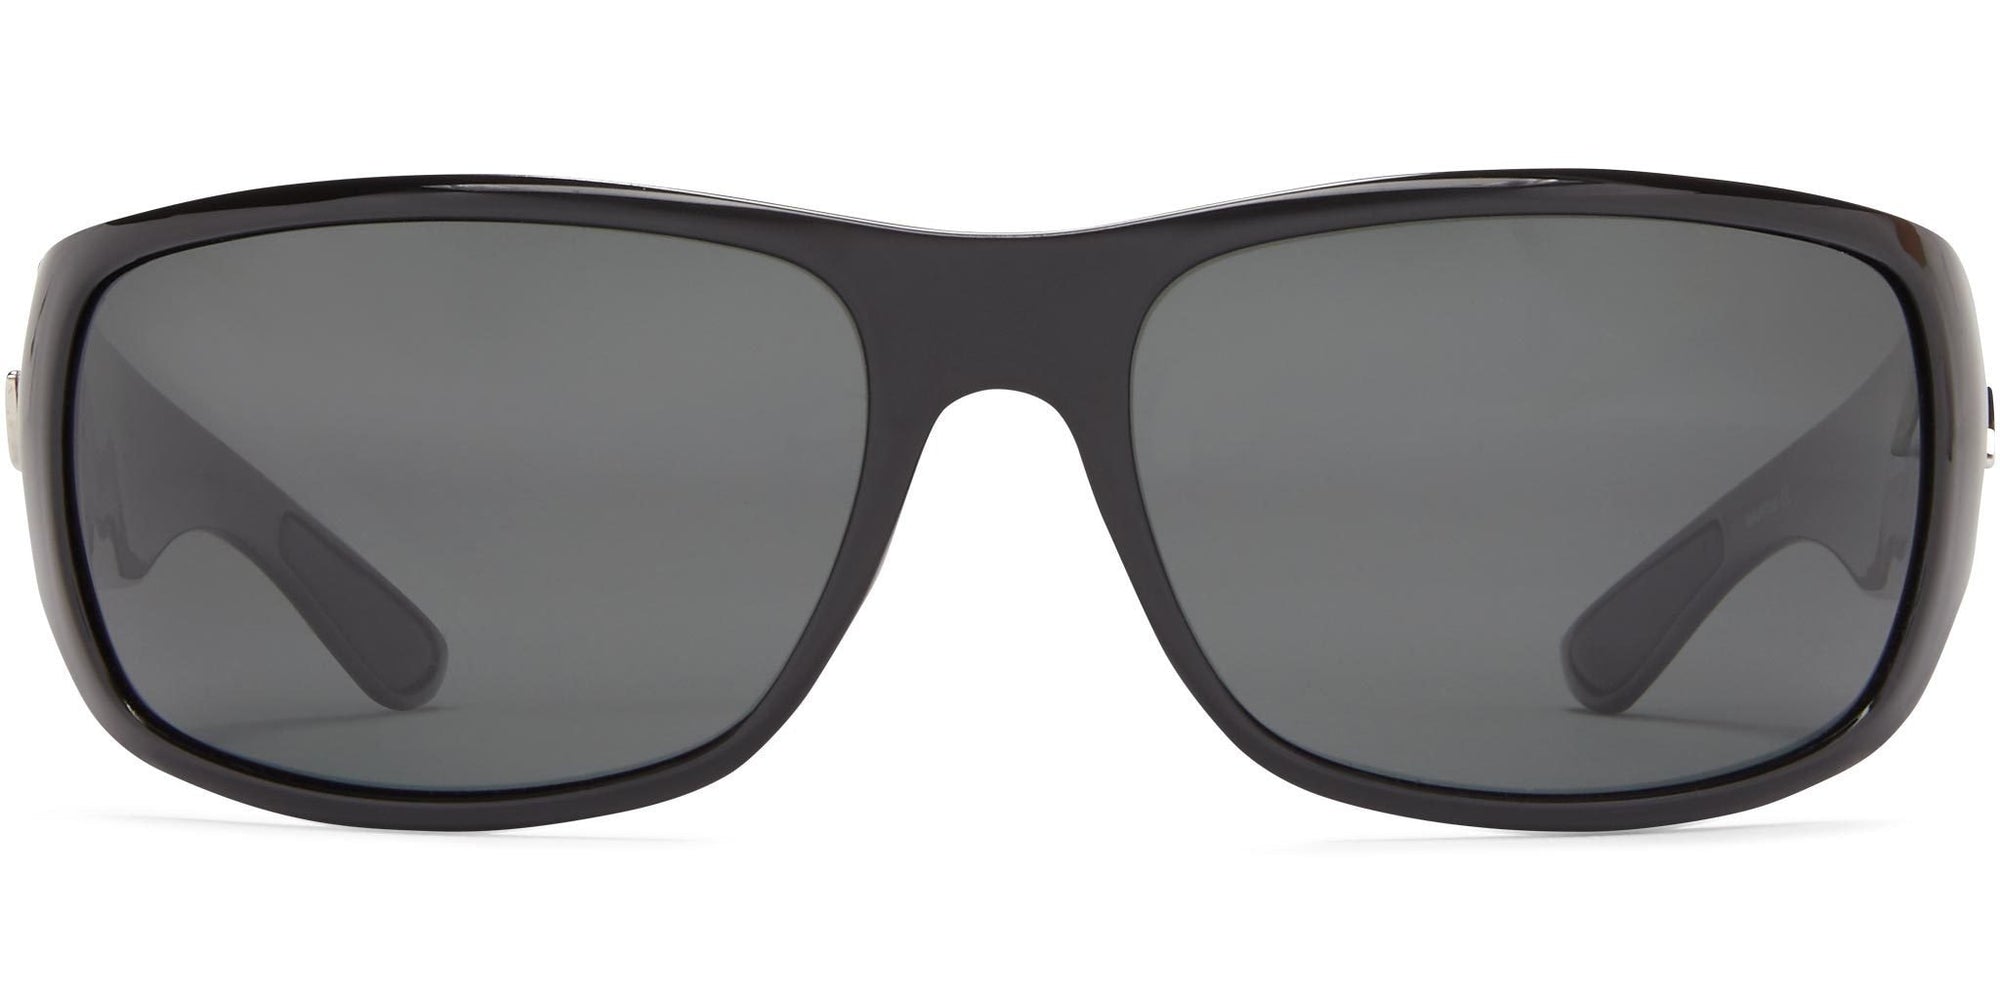 Wake - Shiny Black/Gray Lens - Polarized Sunglasses